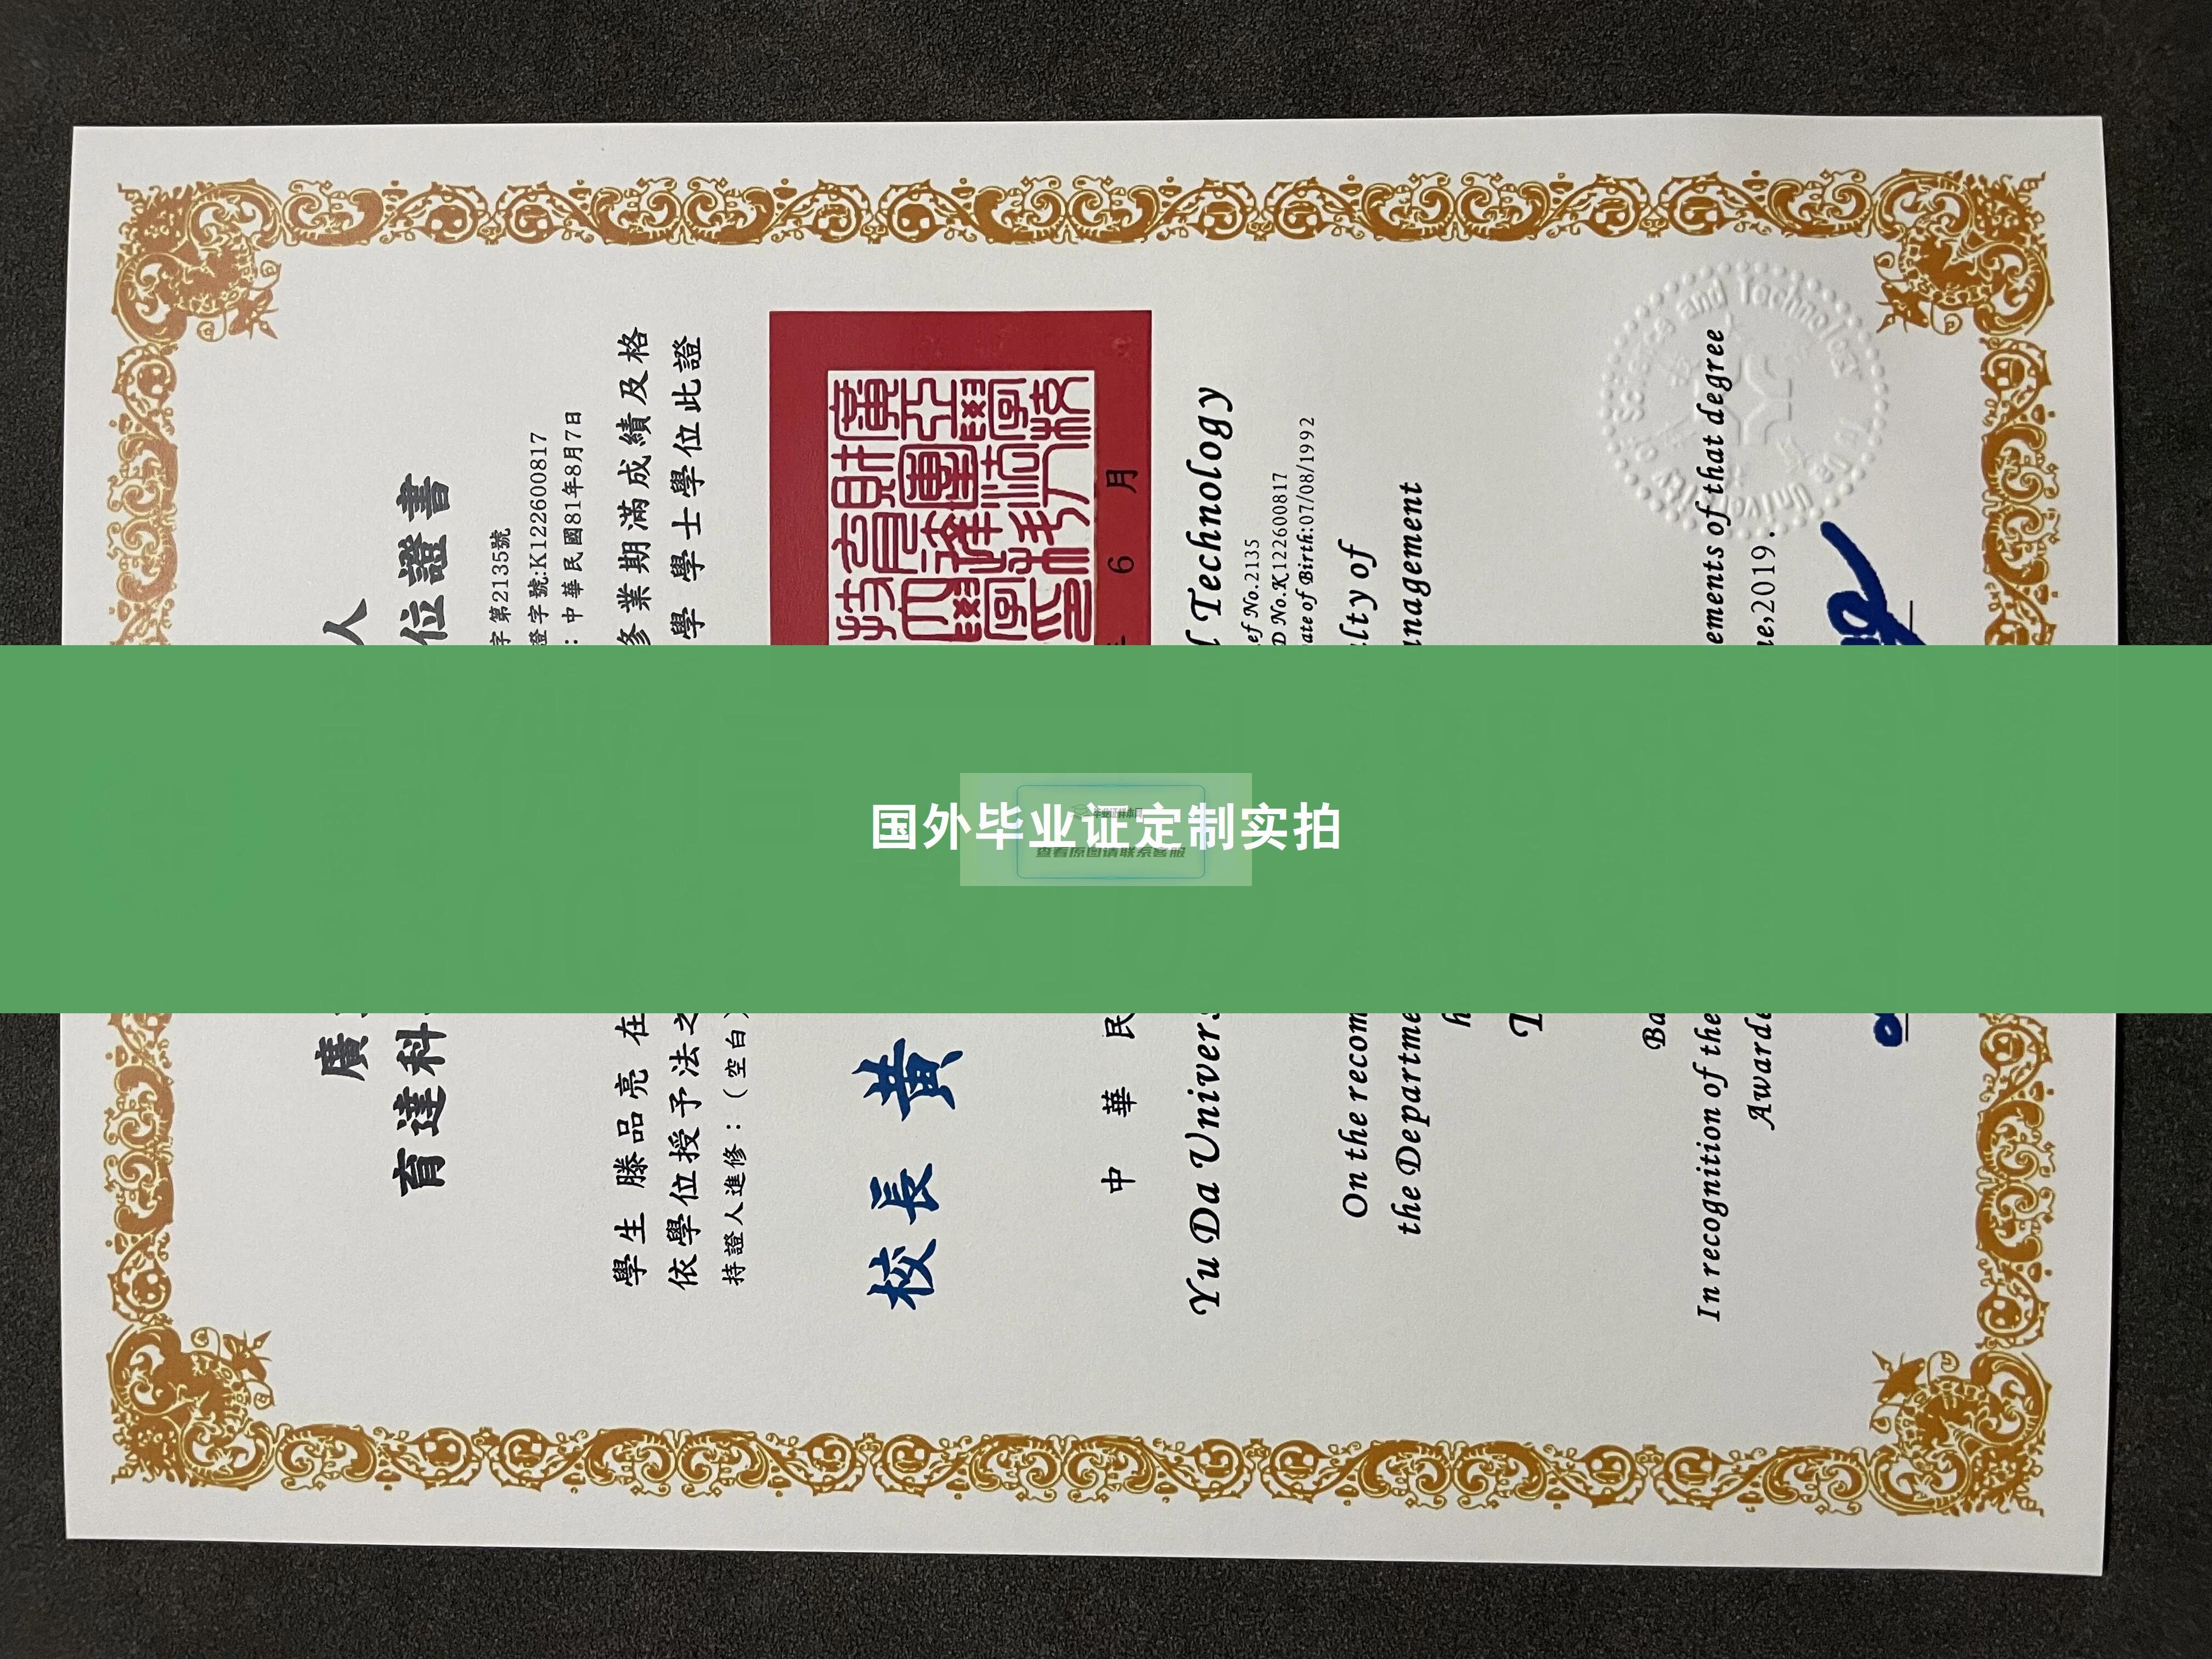 育达科大毕业证书及成绩单样本一览-台湾版